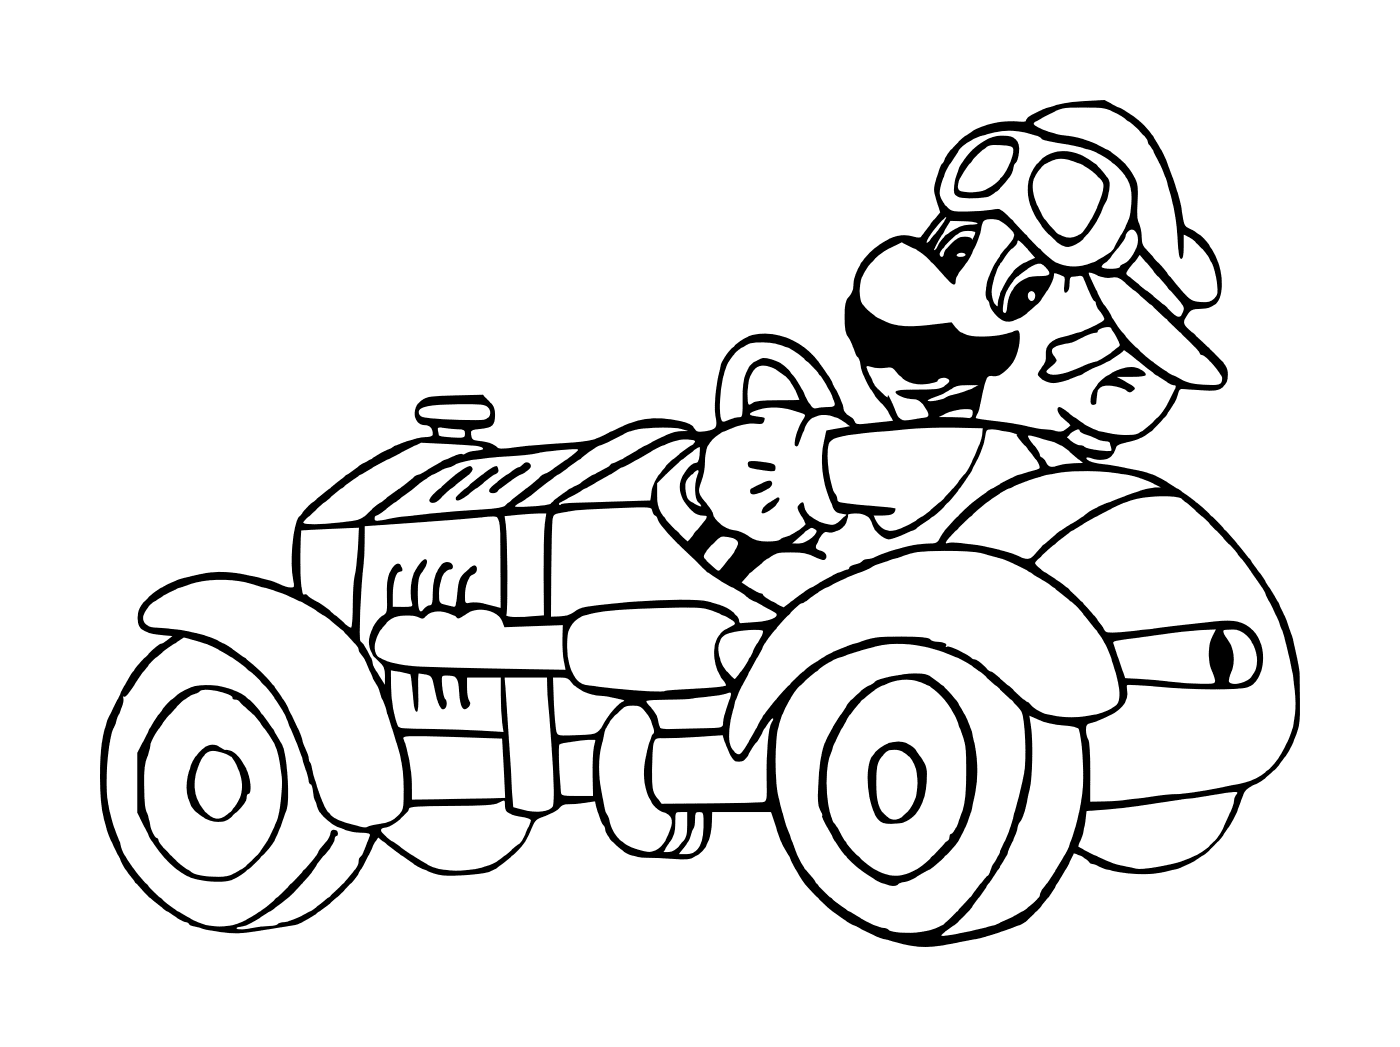  Mario Kart, um carro velho 